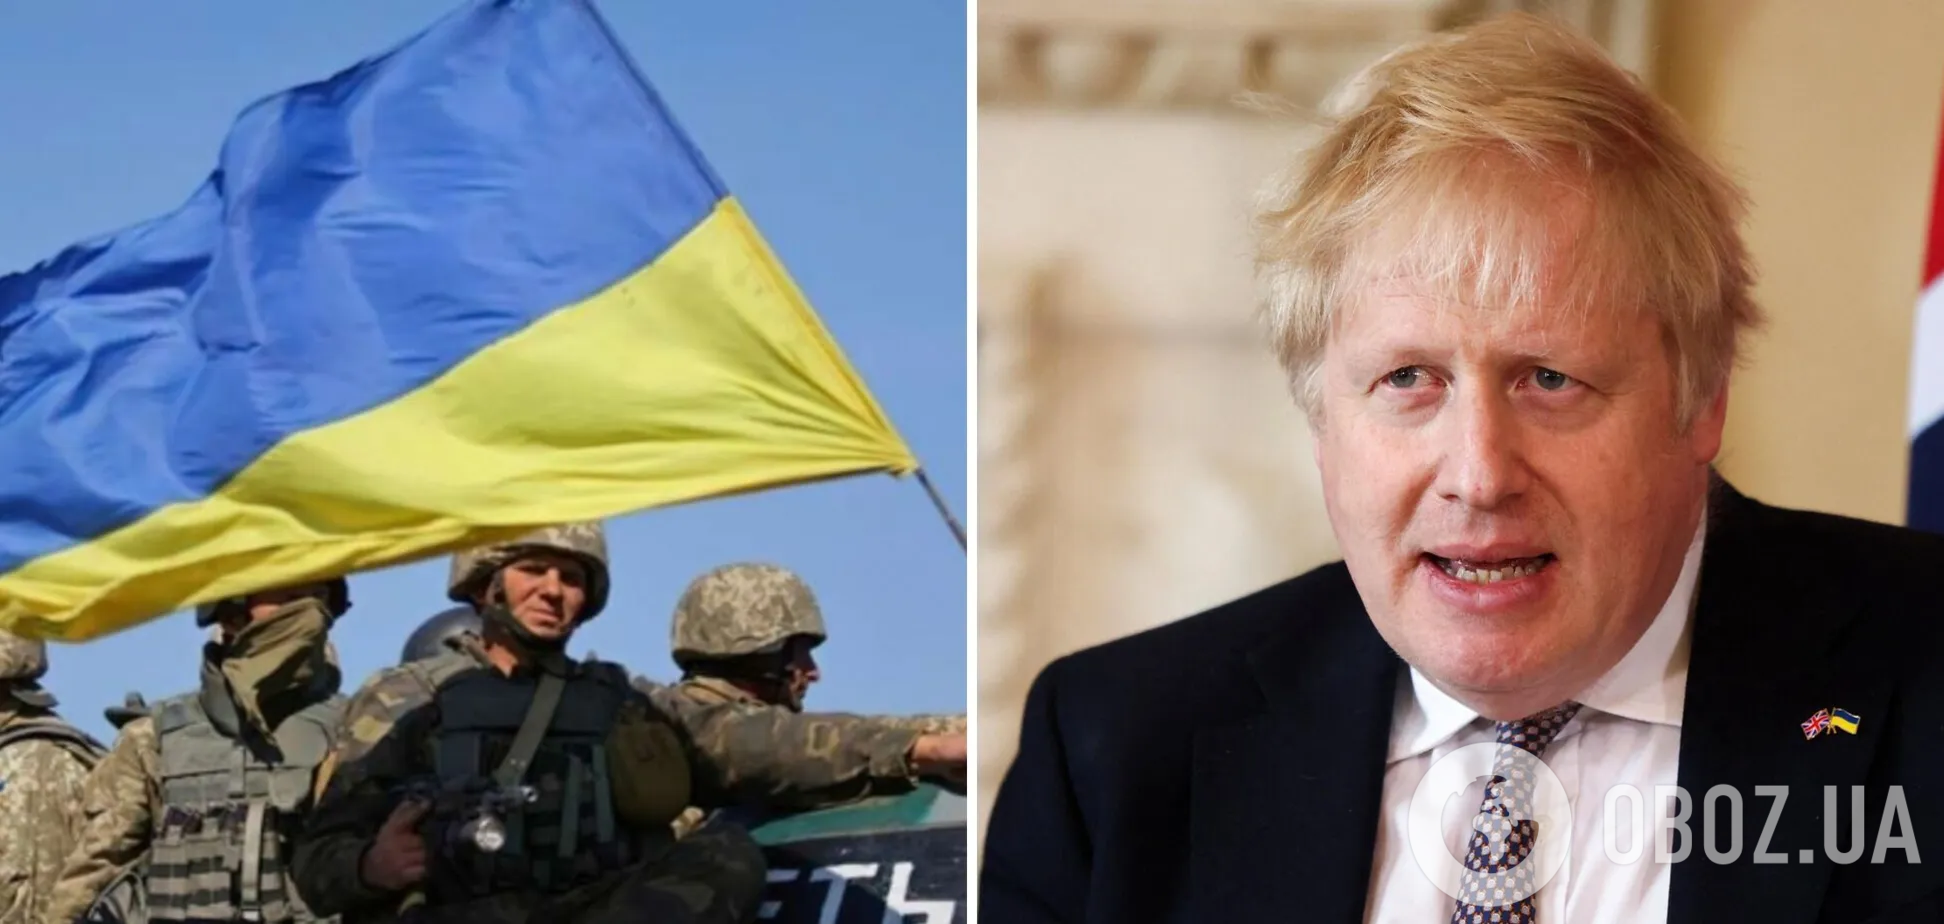 Борис Джонсон выразил Украине поддержку